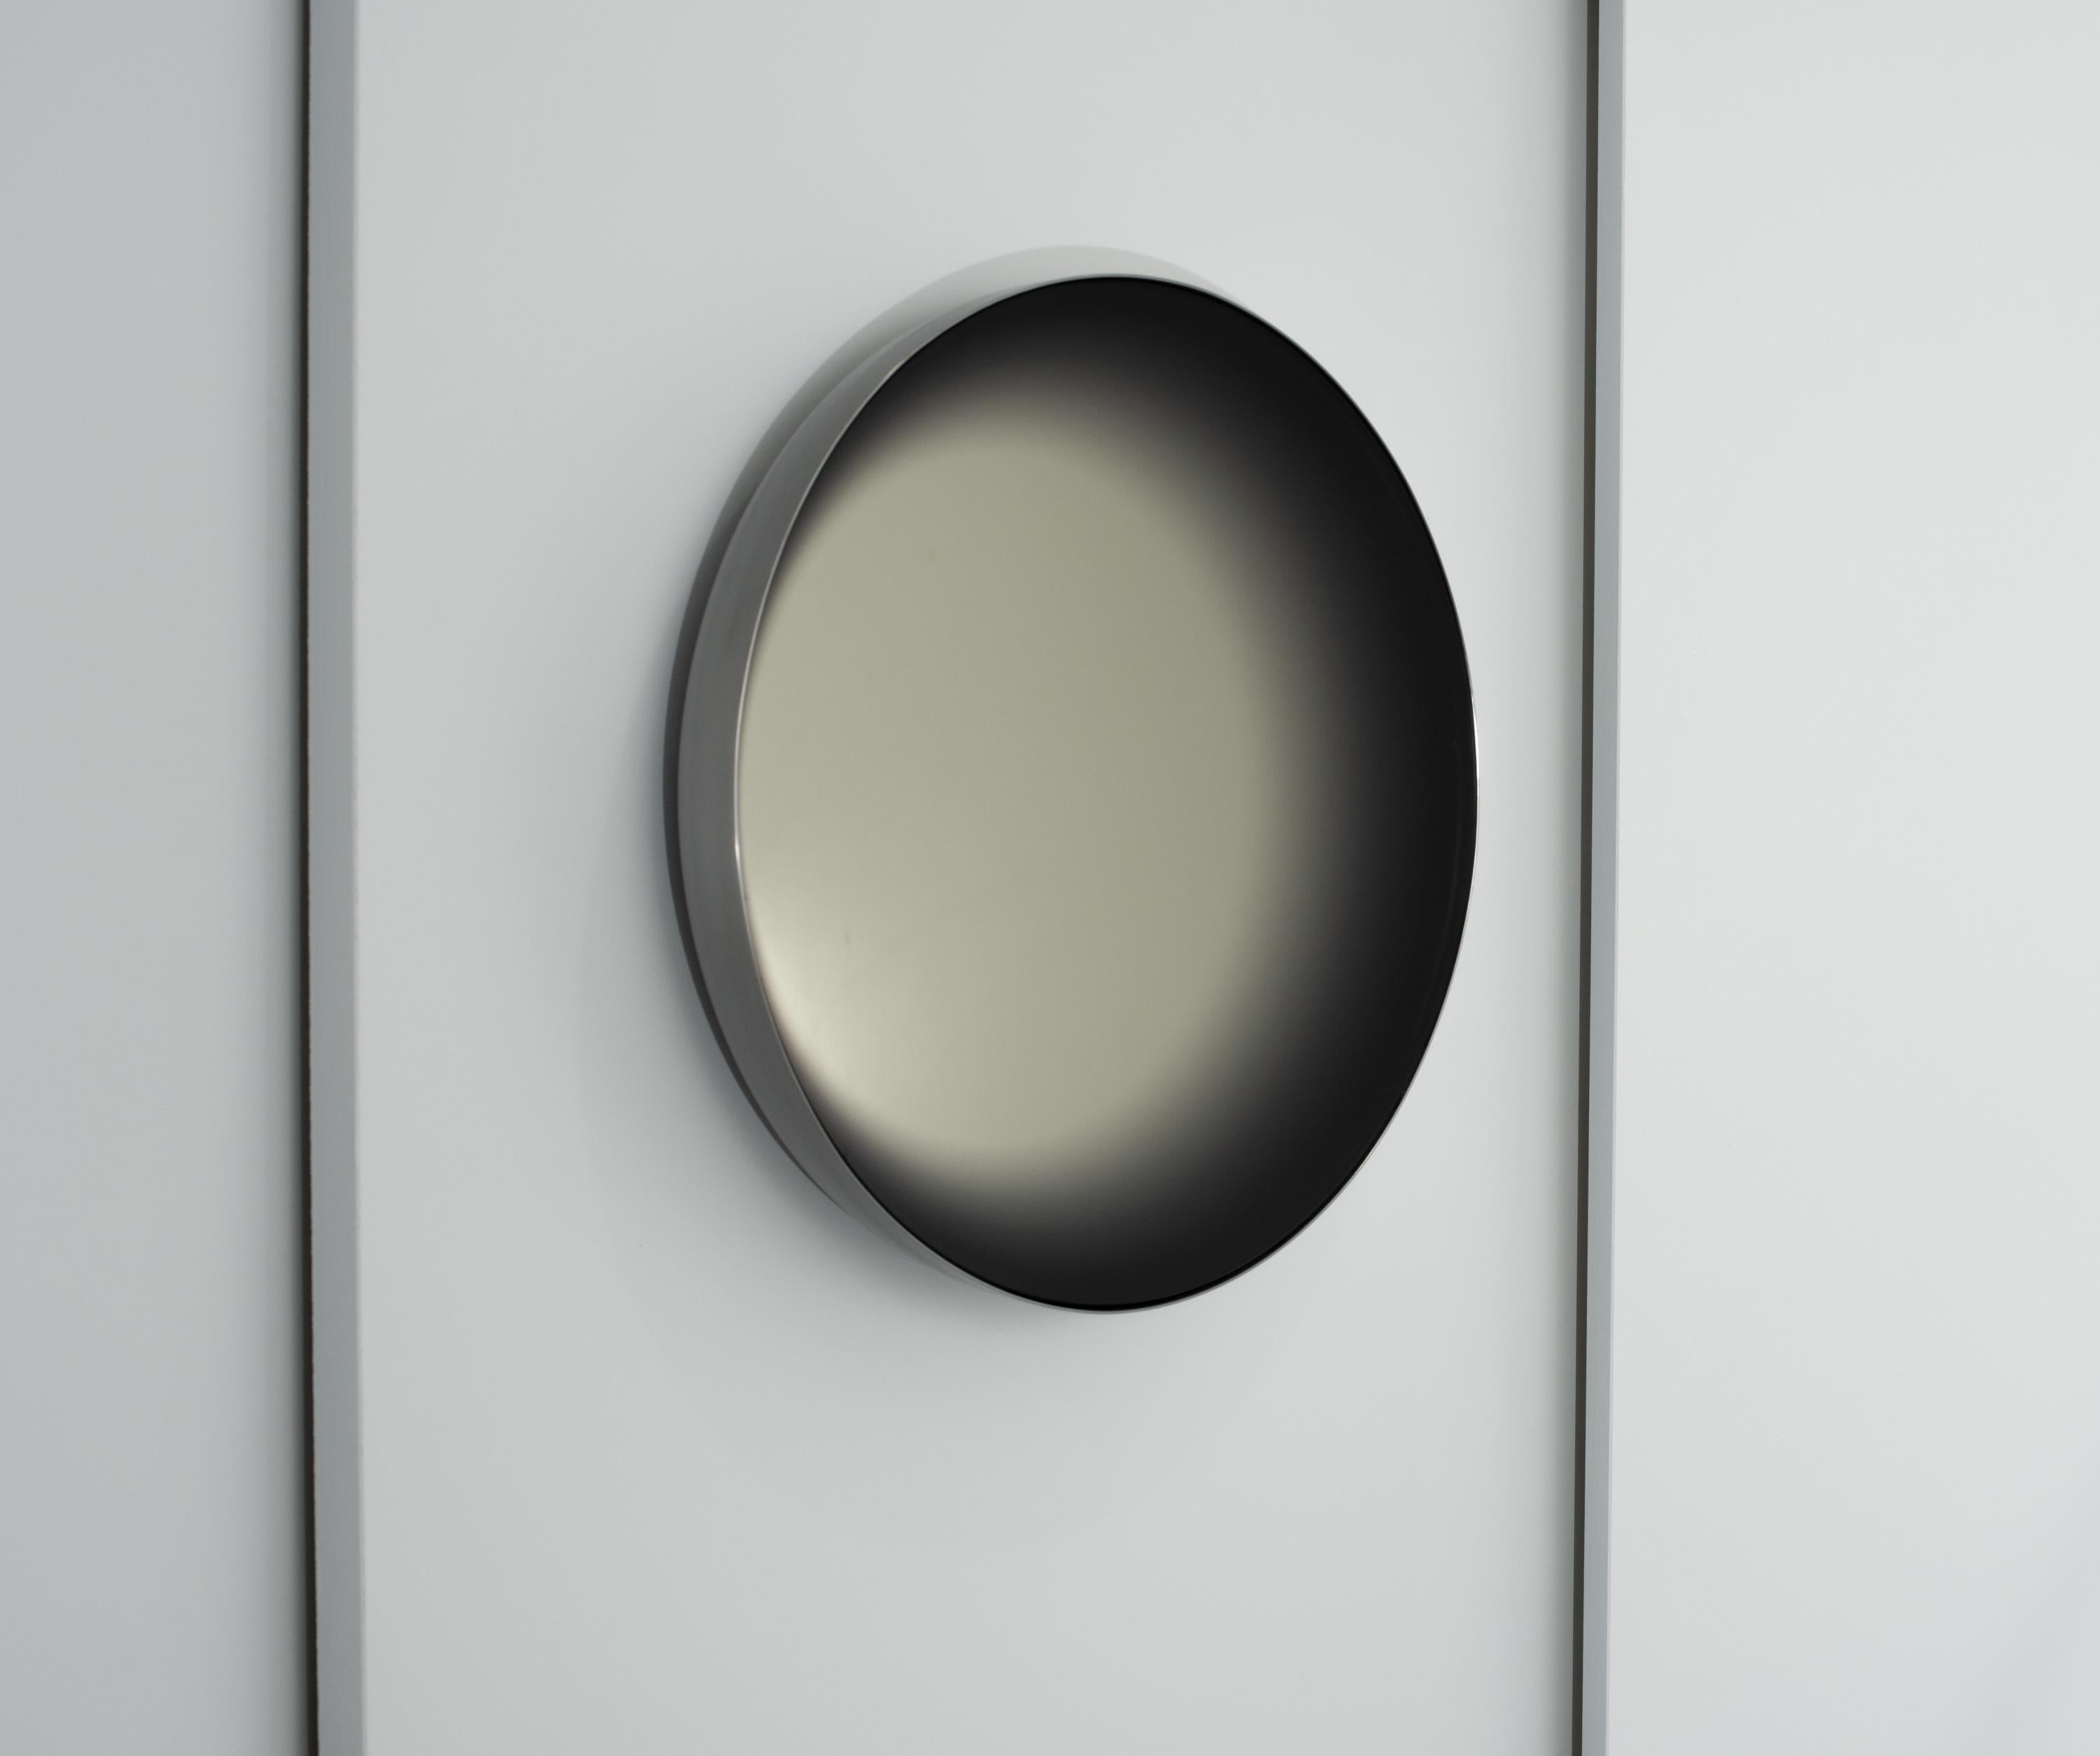 Le miroir convexe concave est une pièce en édition ouverte créée pour l'exposition Alt Material, qui fait partie de la NGV (National Gallery of Victoria) Melbourne Design Week 2020. L'objectif était de concevoir un objet d'usage en réponse au thème